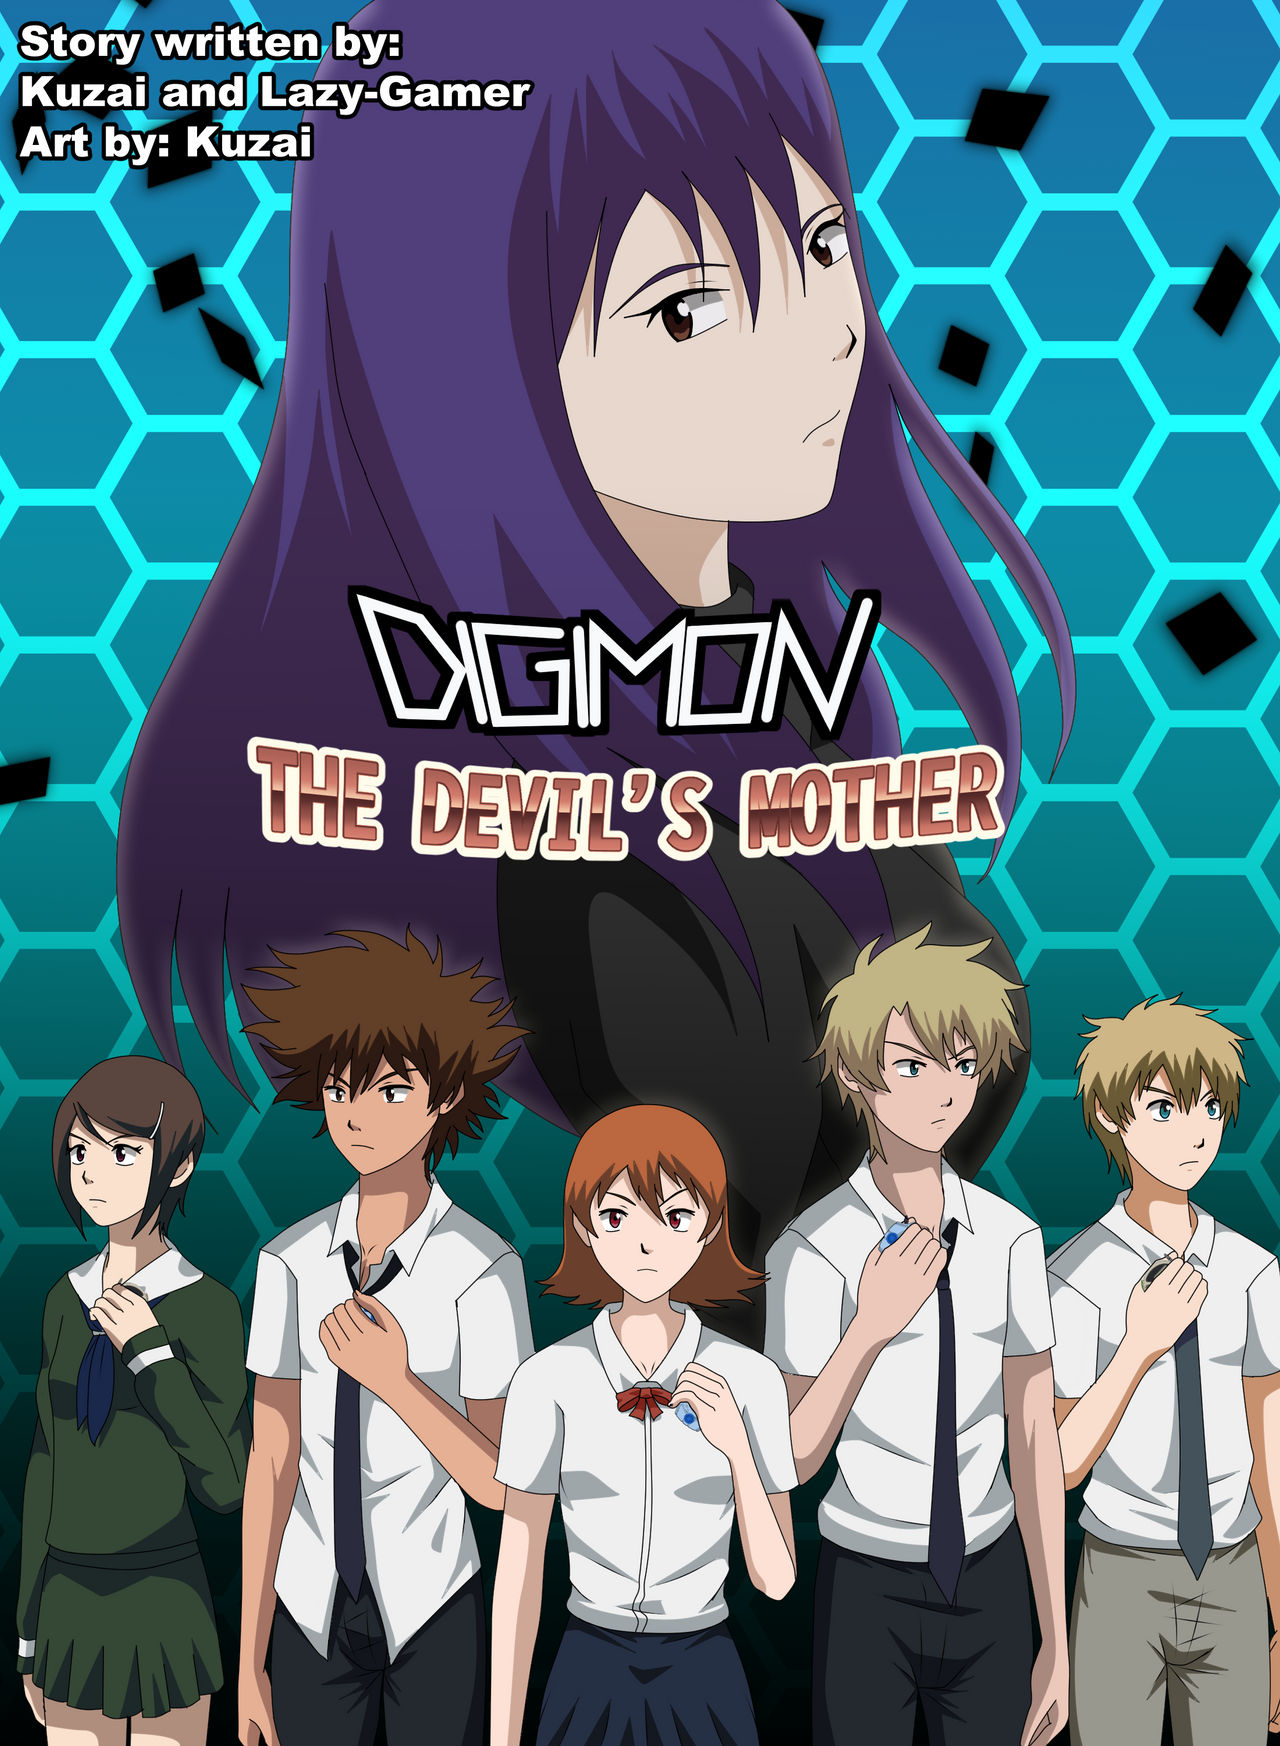 Digimon Adventure - Tri inspired Poster by Deko-kun on DeviantArt